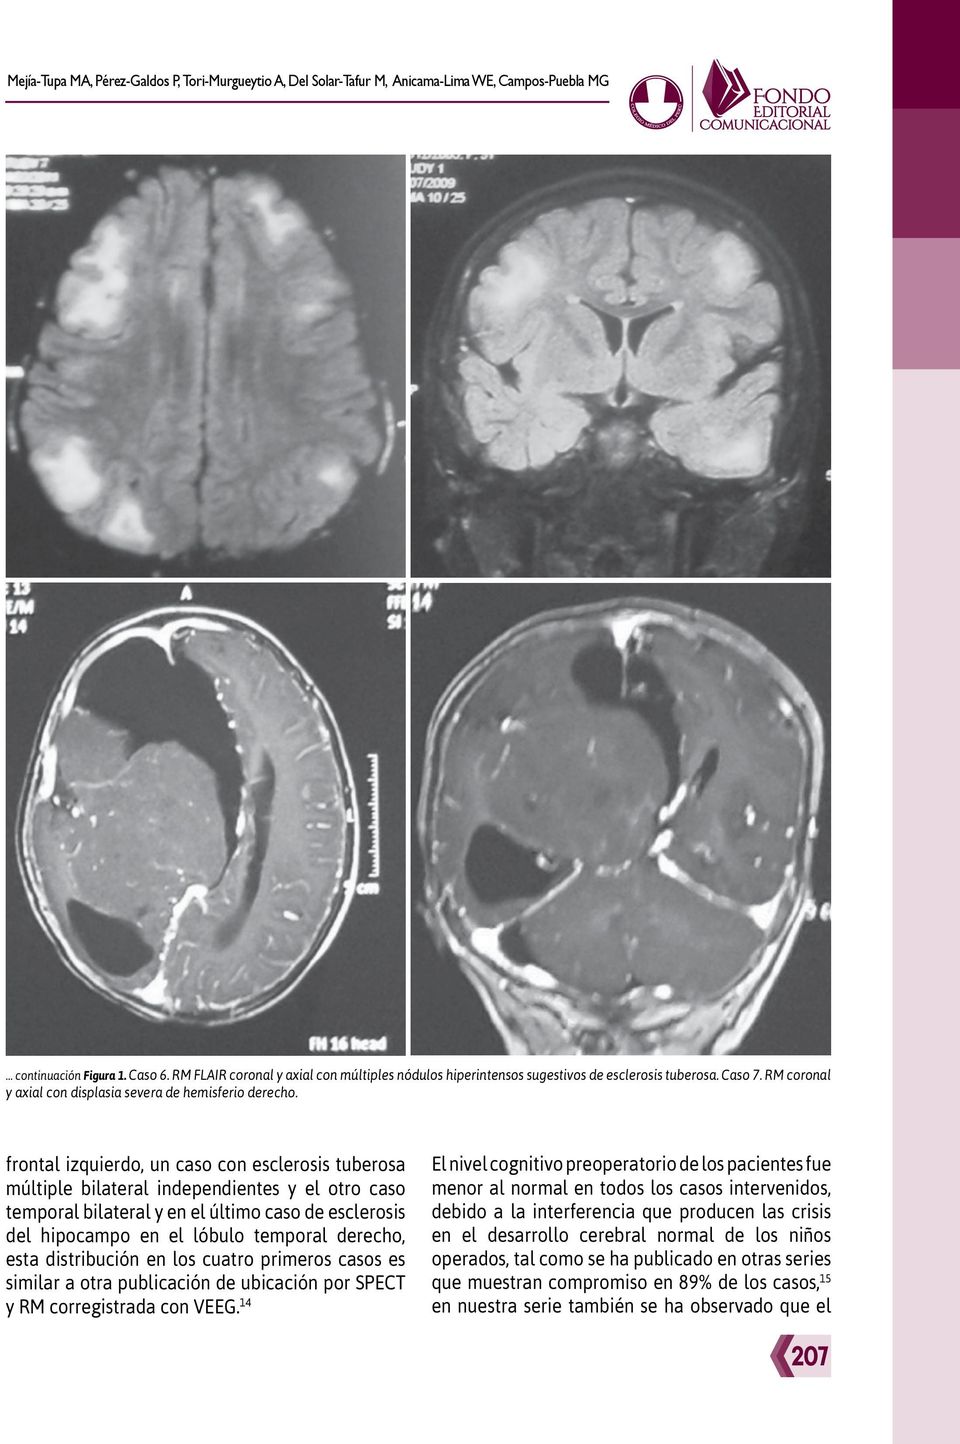 frontal izquierdo, un caso con esclerosis tuberosa múltiple bilateral independientes y el otro caso temporal bilateral y en el último caso de esclerosis del hipocampo en el lóbulo temporal derecho,